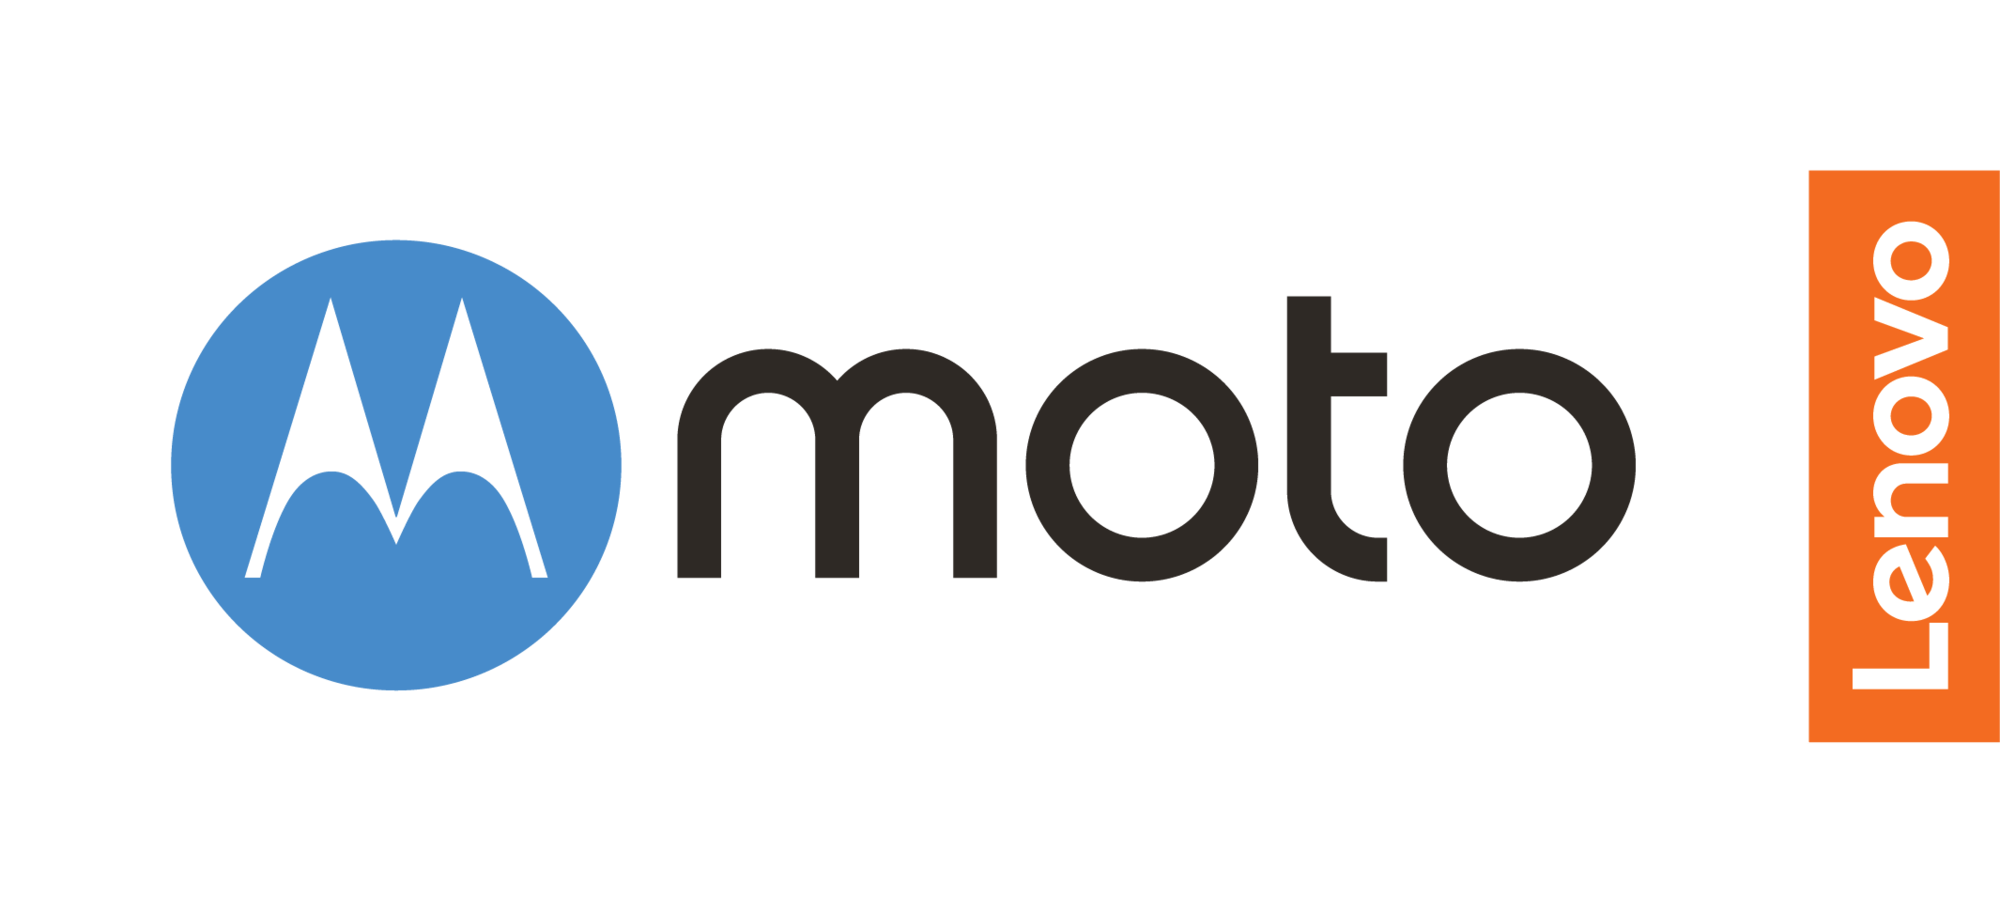 Motorola 2018 Logo - Motorola prepara sus mejores armas para este 2018 | Gamer Style